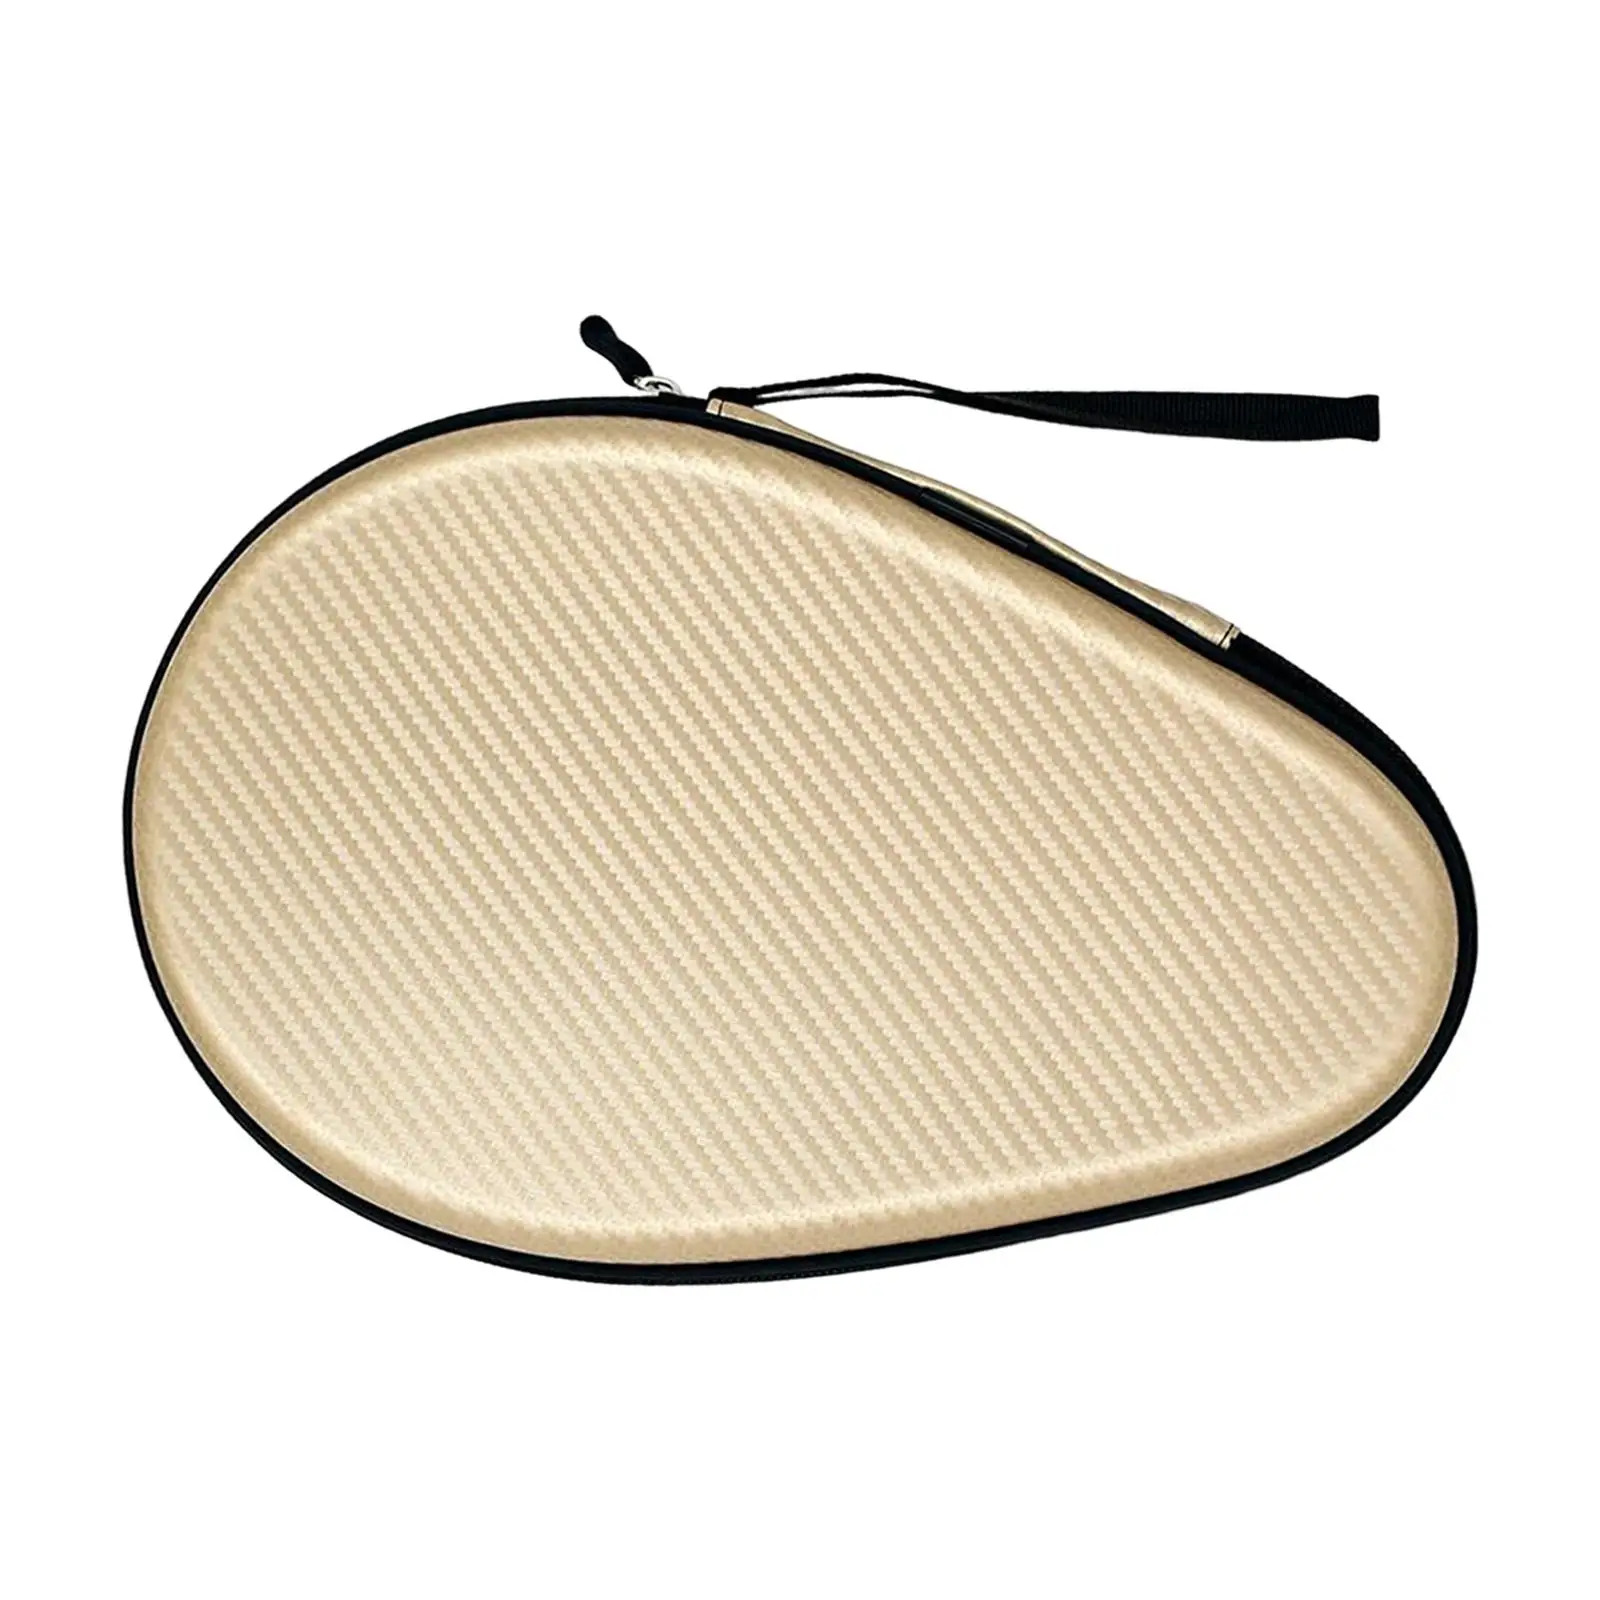 Table Tennis Racket Bag EVA Storage Case Waterproof with Zipper for Indoor